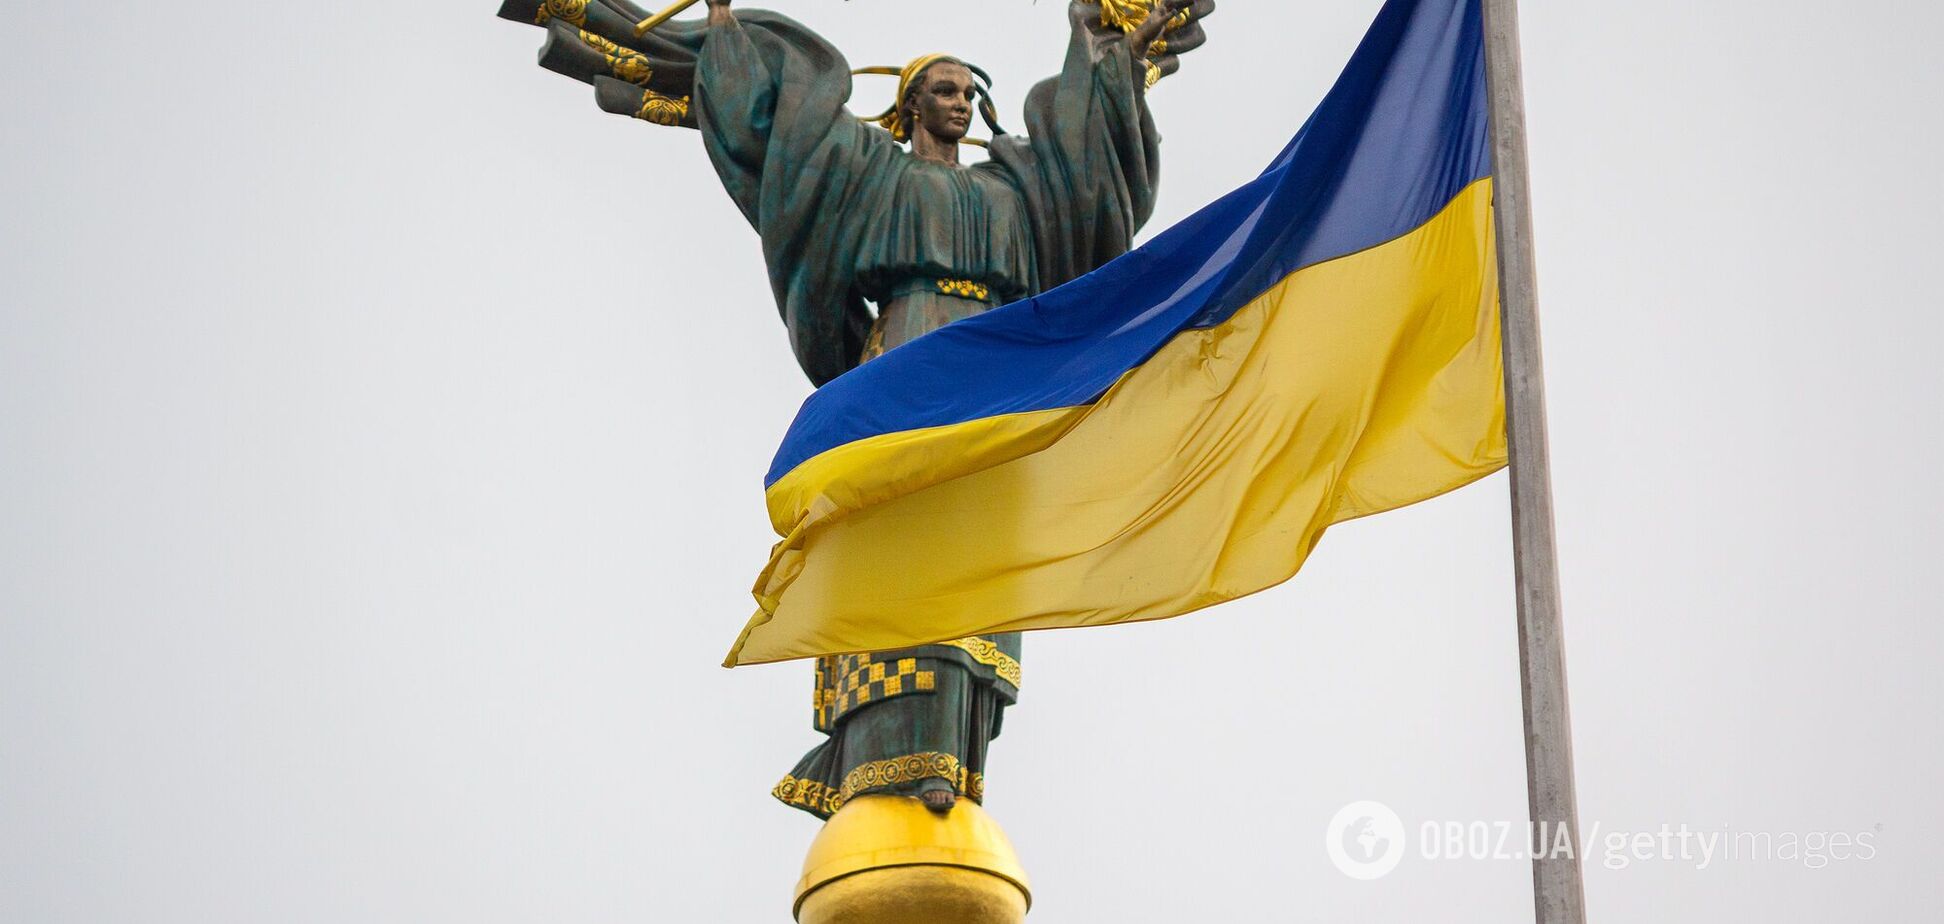 Перейменування вулиць: ми відмовимося від російських діячів разом з українськими?